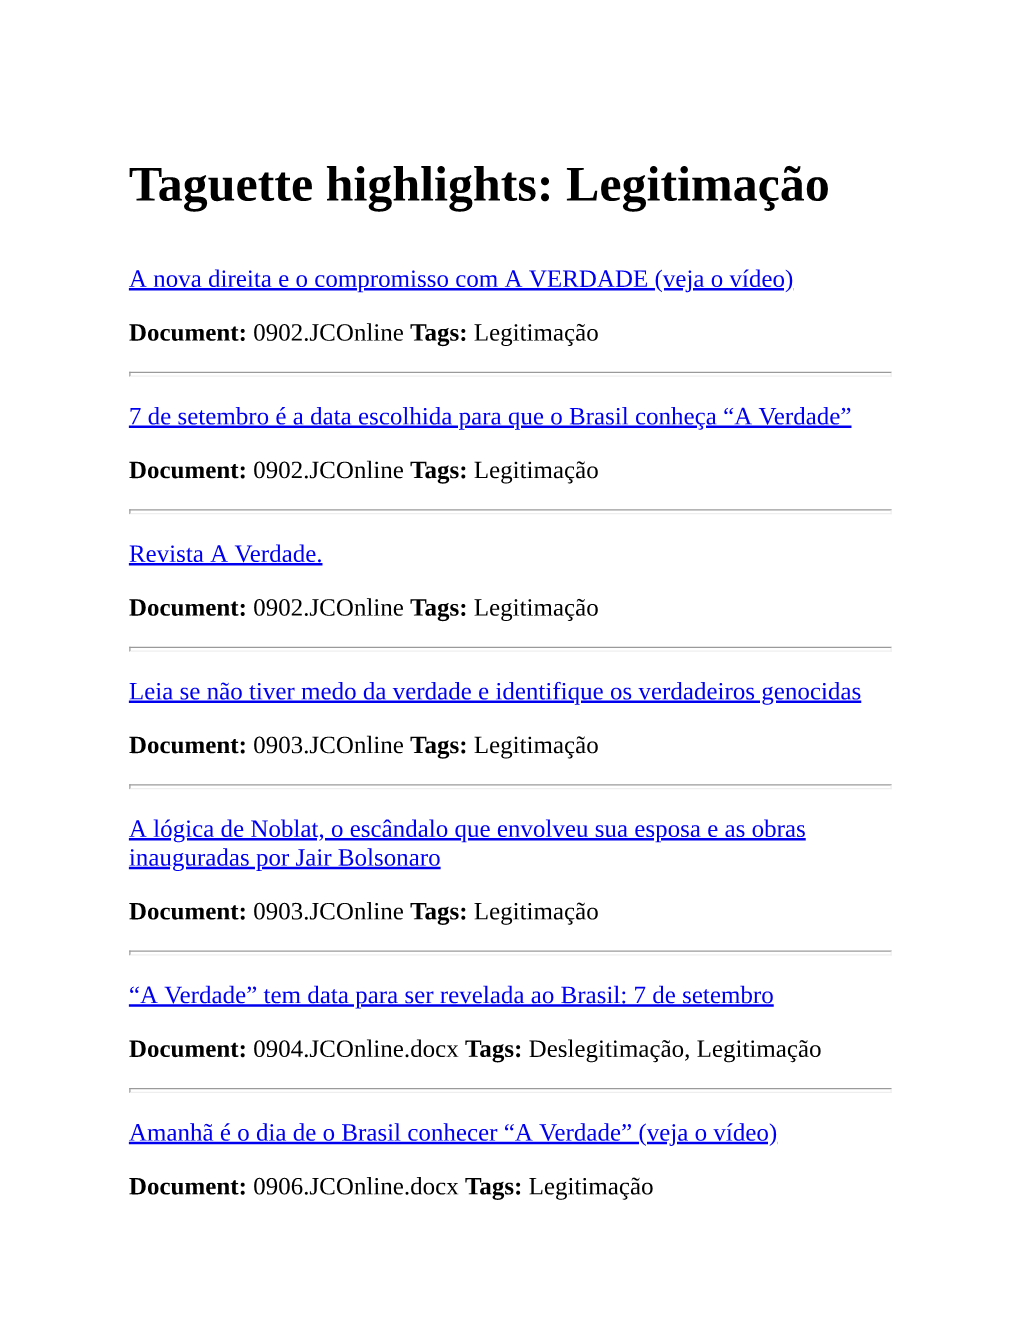 Taguette Highlights: Legitimação